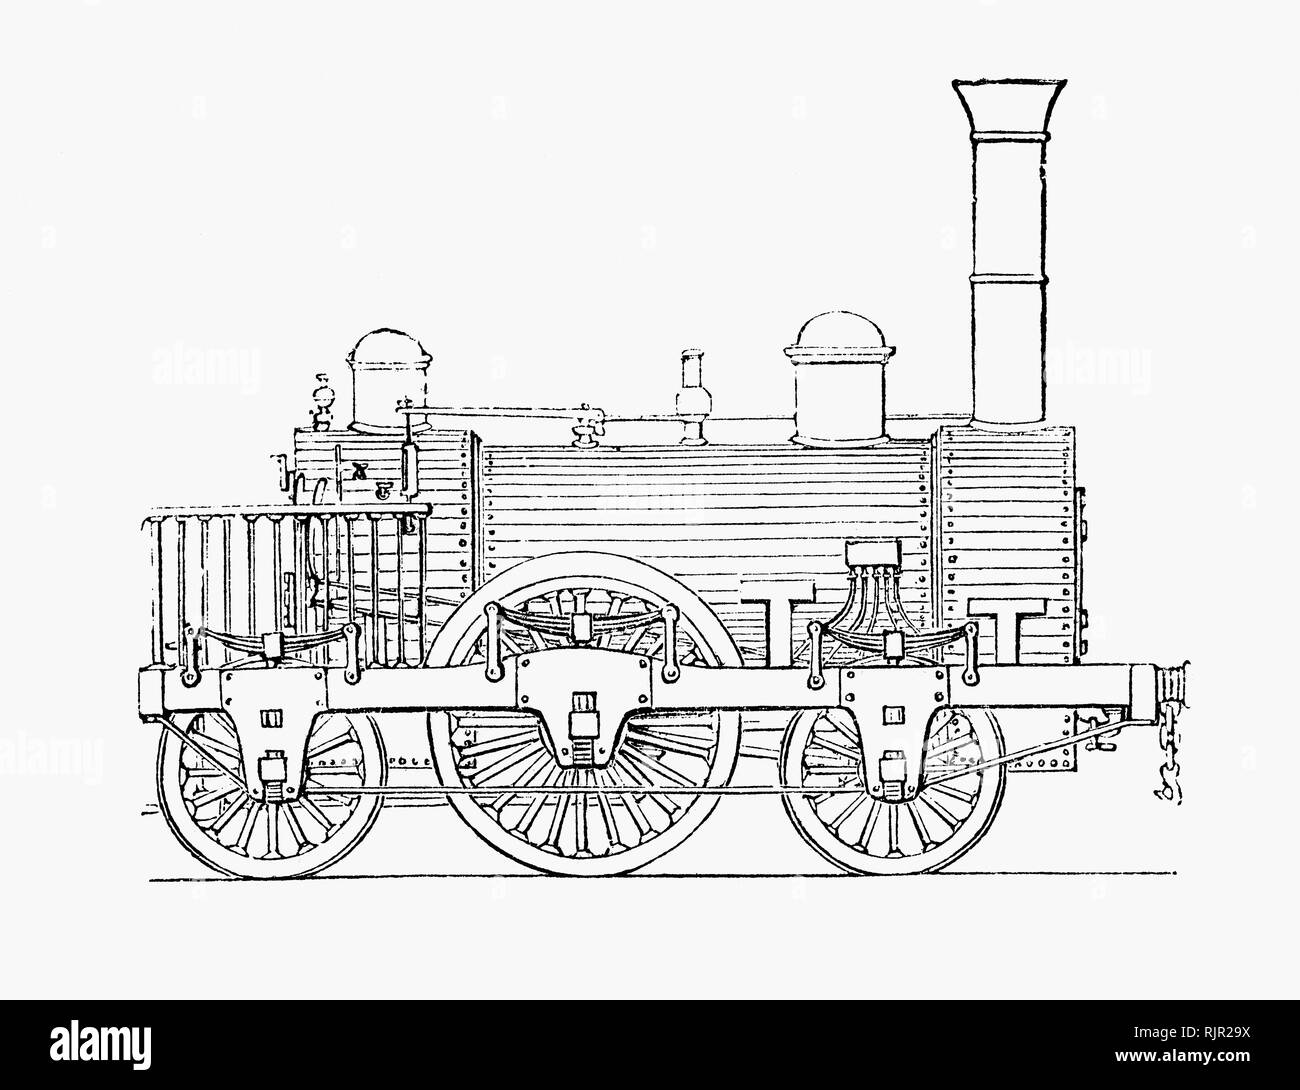 Le Liverpool et Manchester Railway (L&MR) était un chemin de fer a ouvert ses portes le 15 septembre 1830 entre les villes de Lancashire Liverpool et Manchester en Angleterre. Il a été le premier chemin de fer de se reposer exclusivement sur les locomotives entraîné par la puissance de la vapeur, sans trafic à cheval interdit en tout temps ; la première à être entièrement double voie sur toute sa longueur ; le premier à avoir un système de signalisation ; le premier à être entièrement dans l'espace ; et la première pour transporter le courrier. Banque D'Images